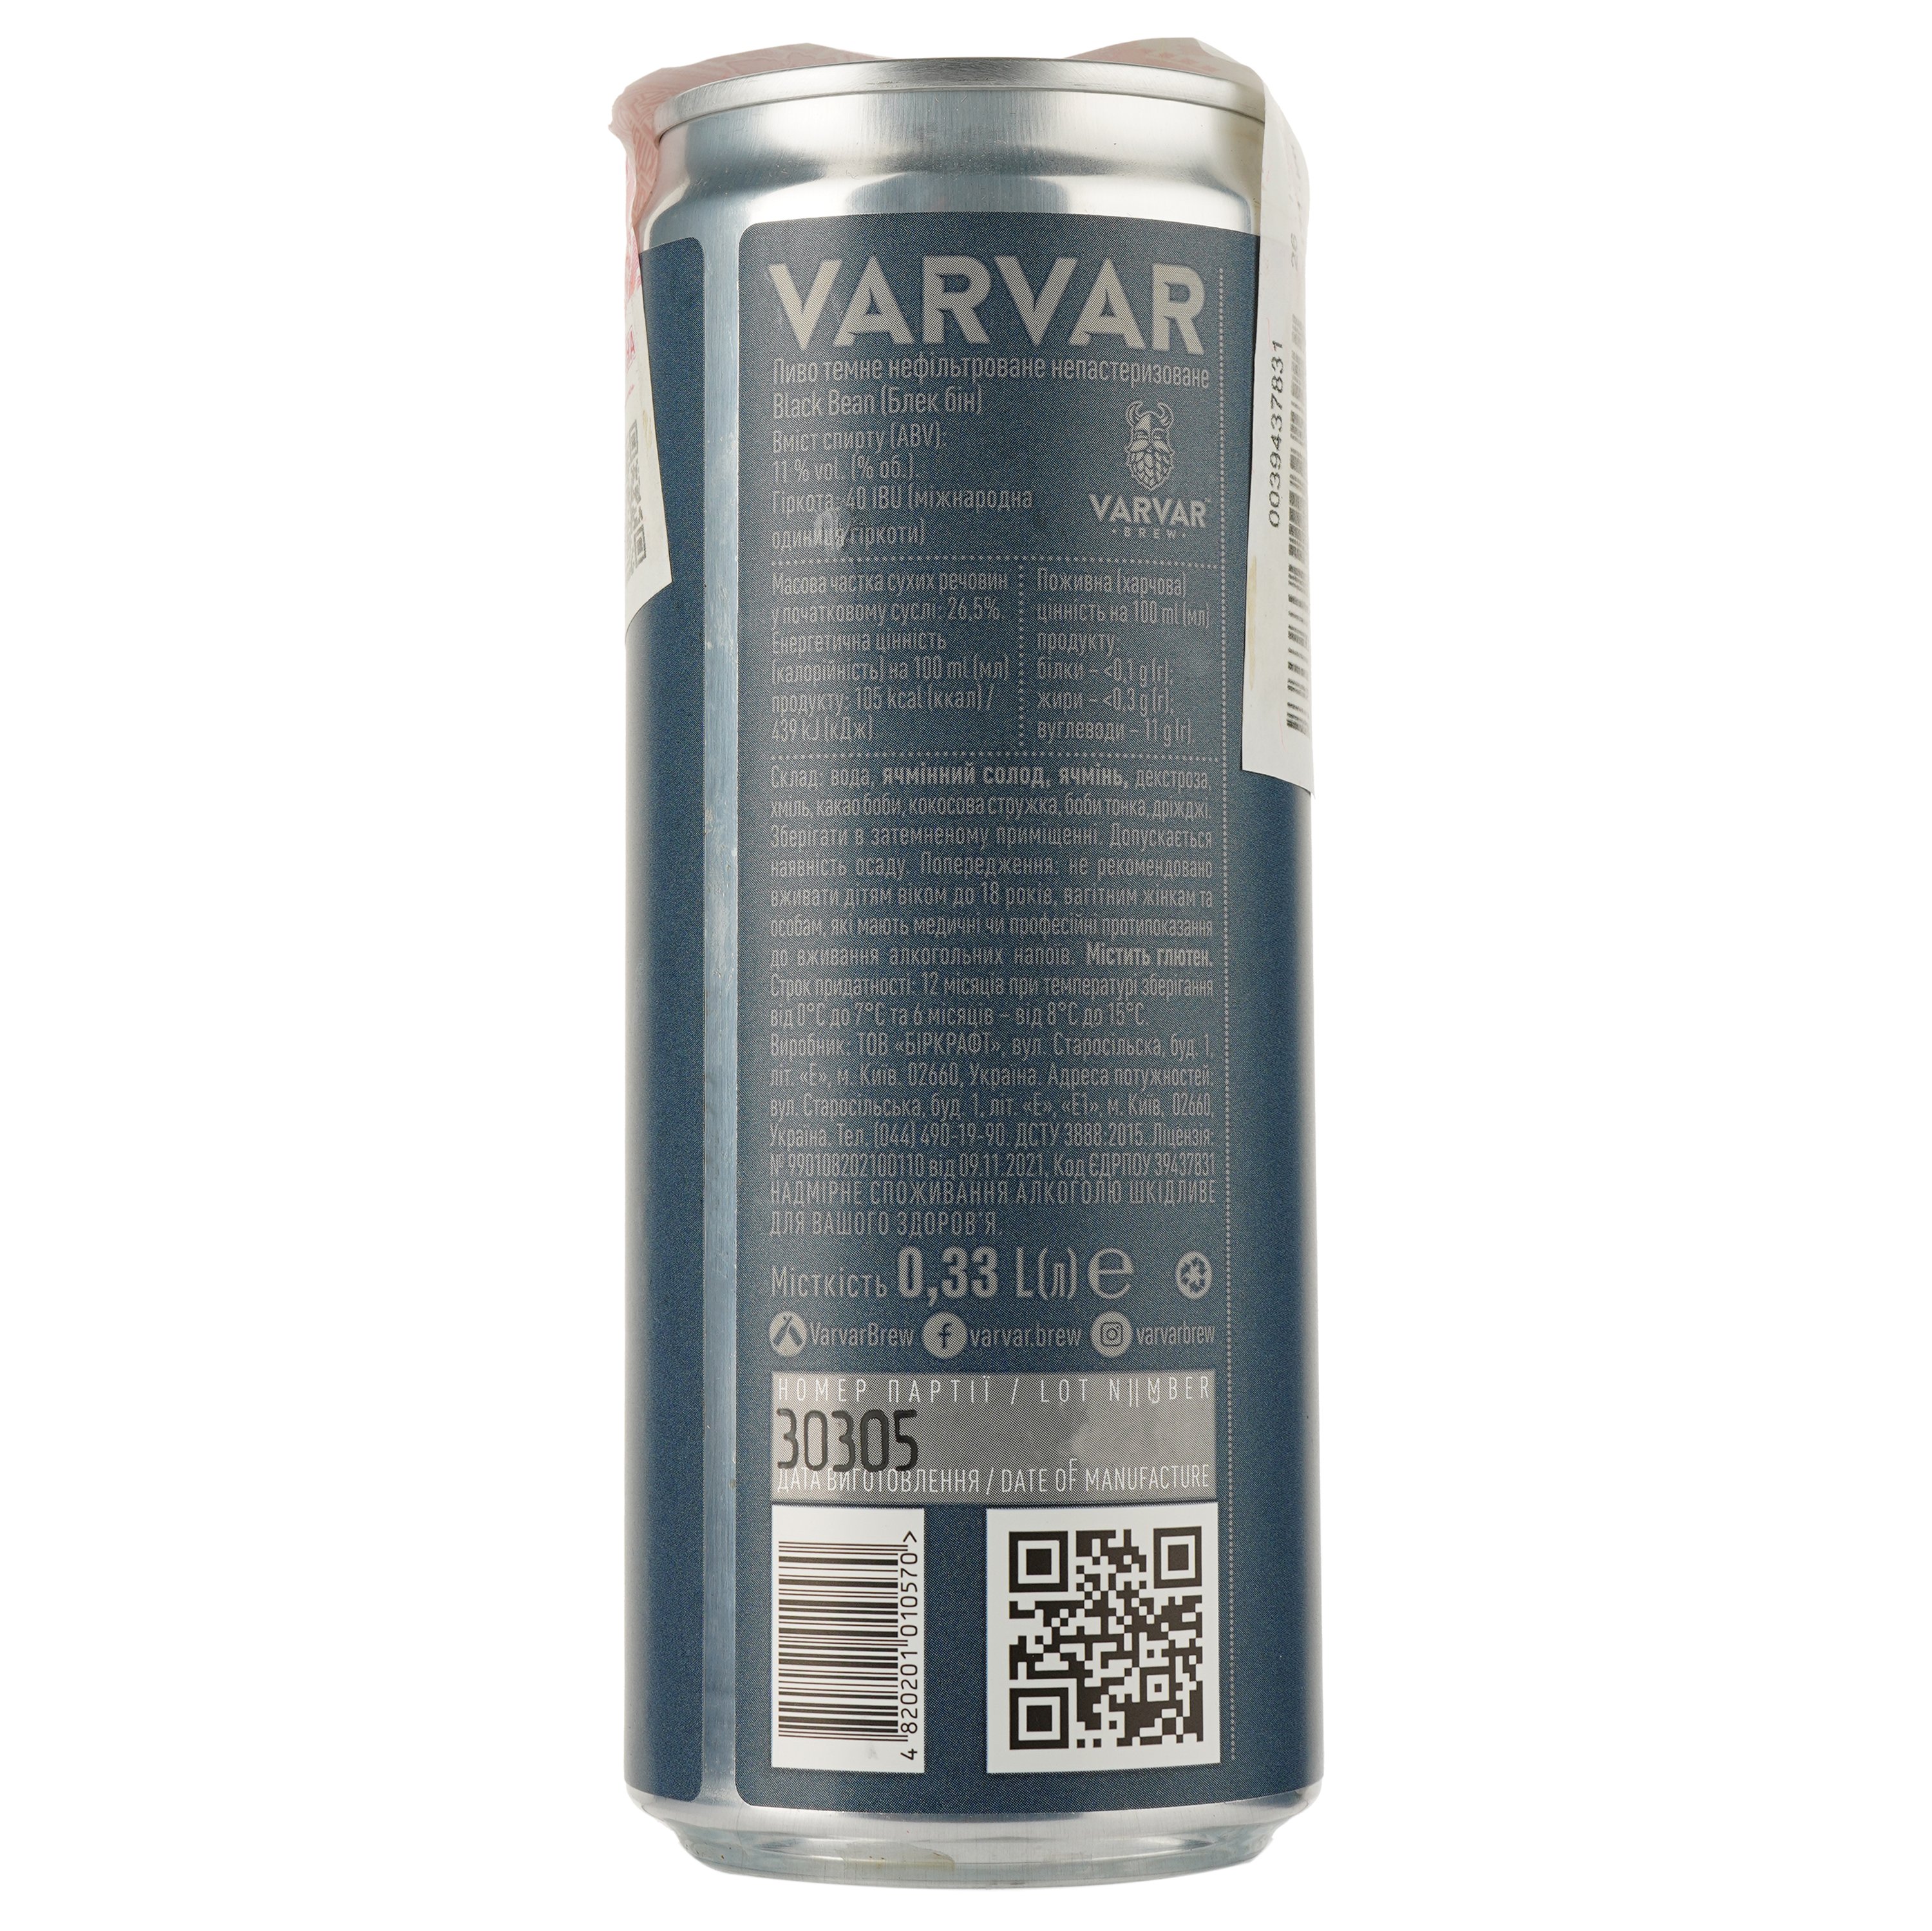 Пиво Varvar Black Bean, темное, нефильтрованное, 11%, ж/б, 0,33 л (840485) - фото 2